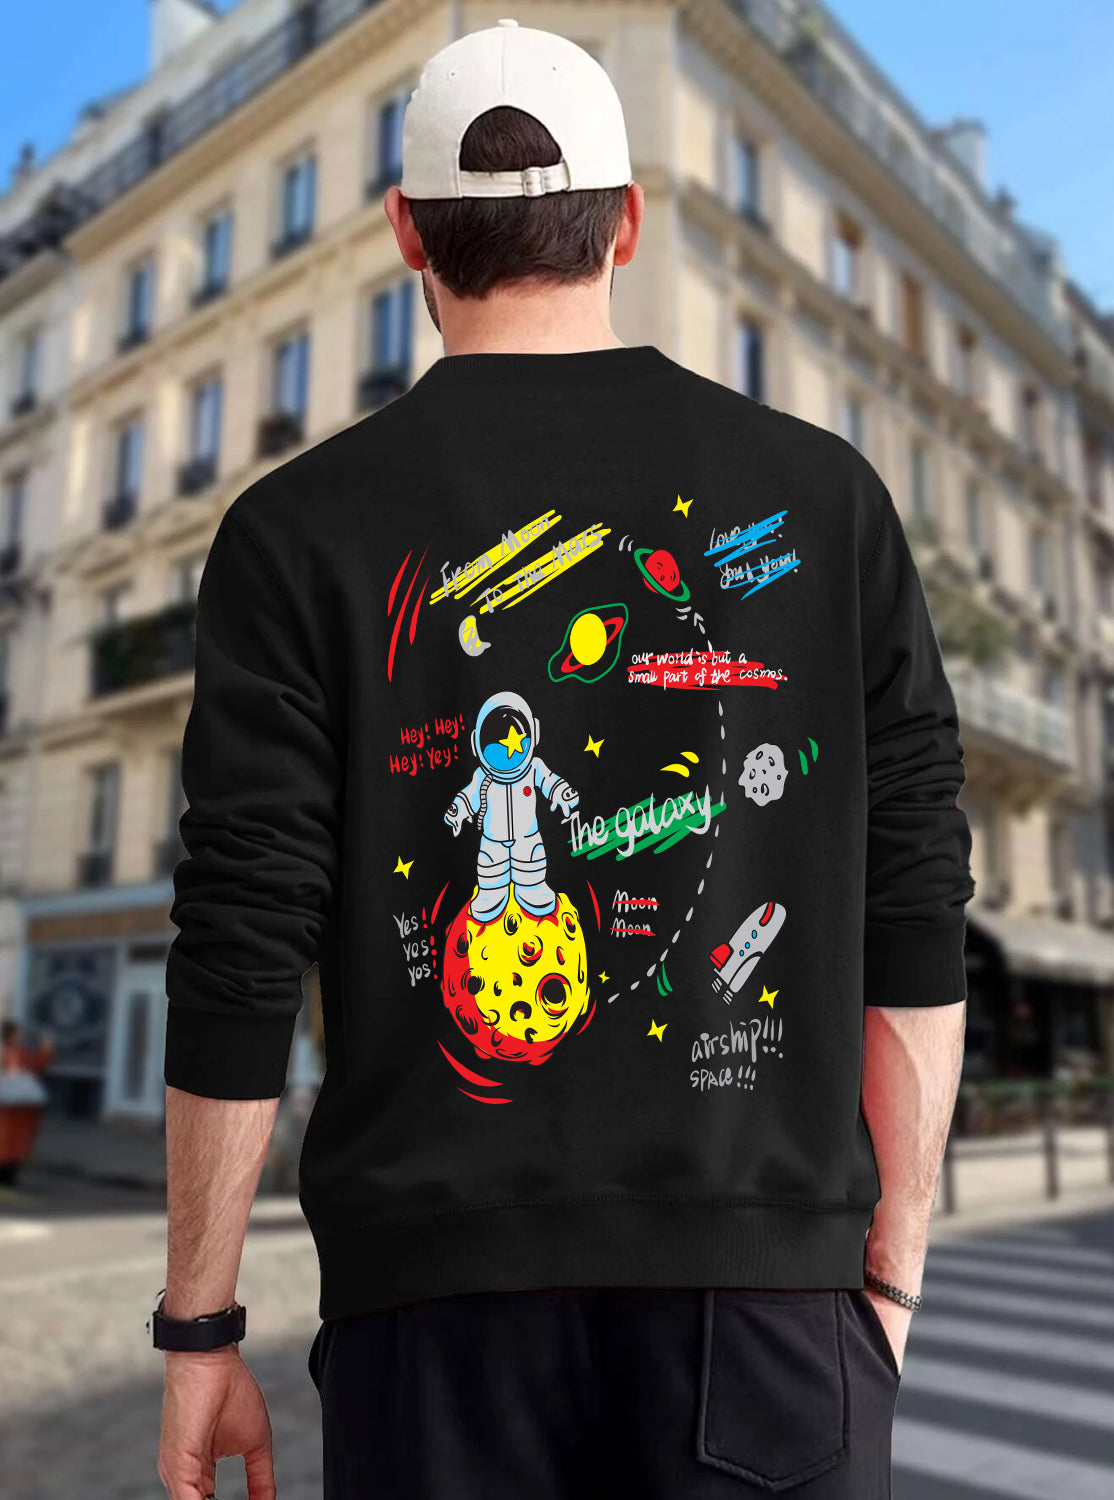 Space Explorer -Sweatshirt